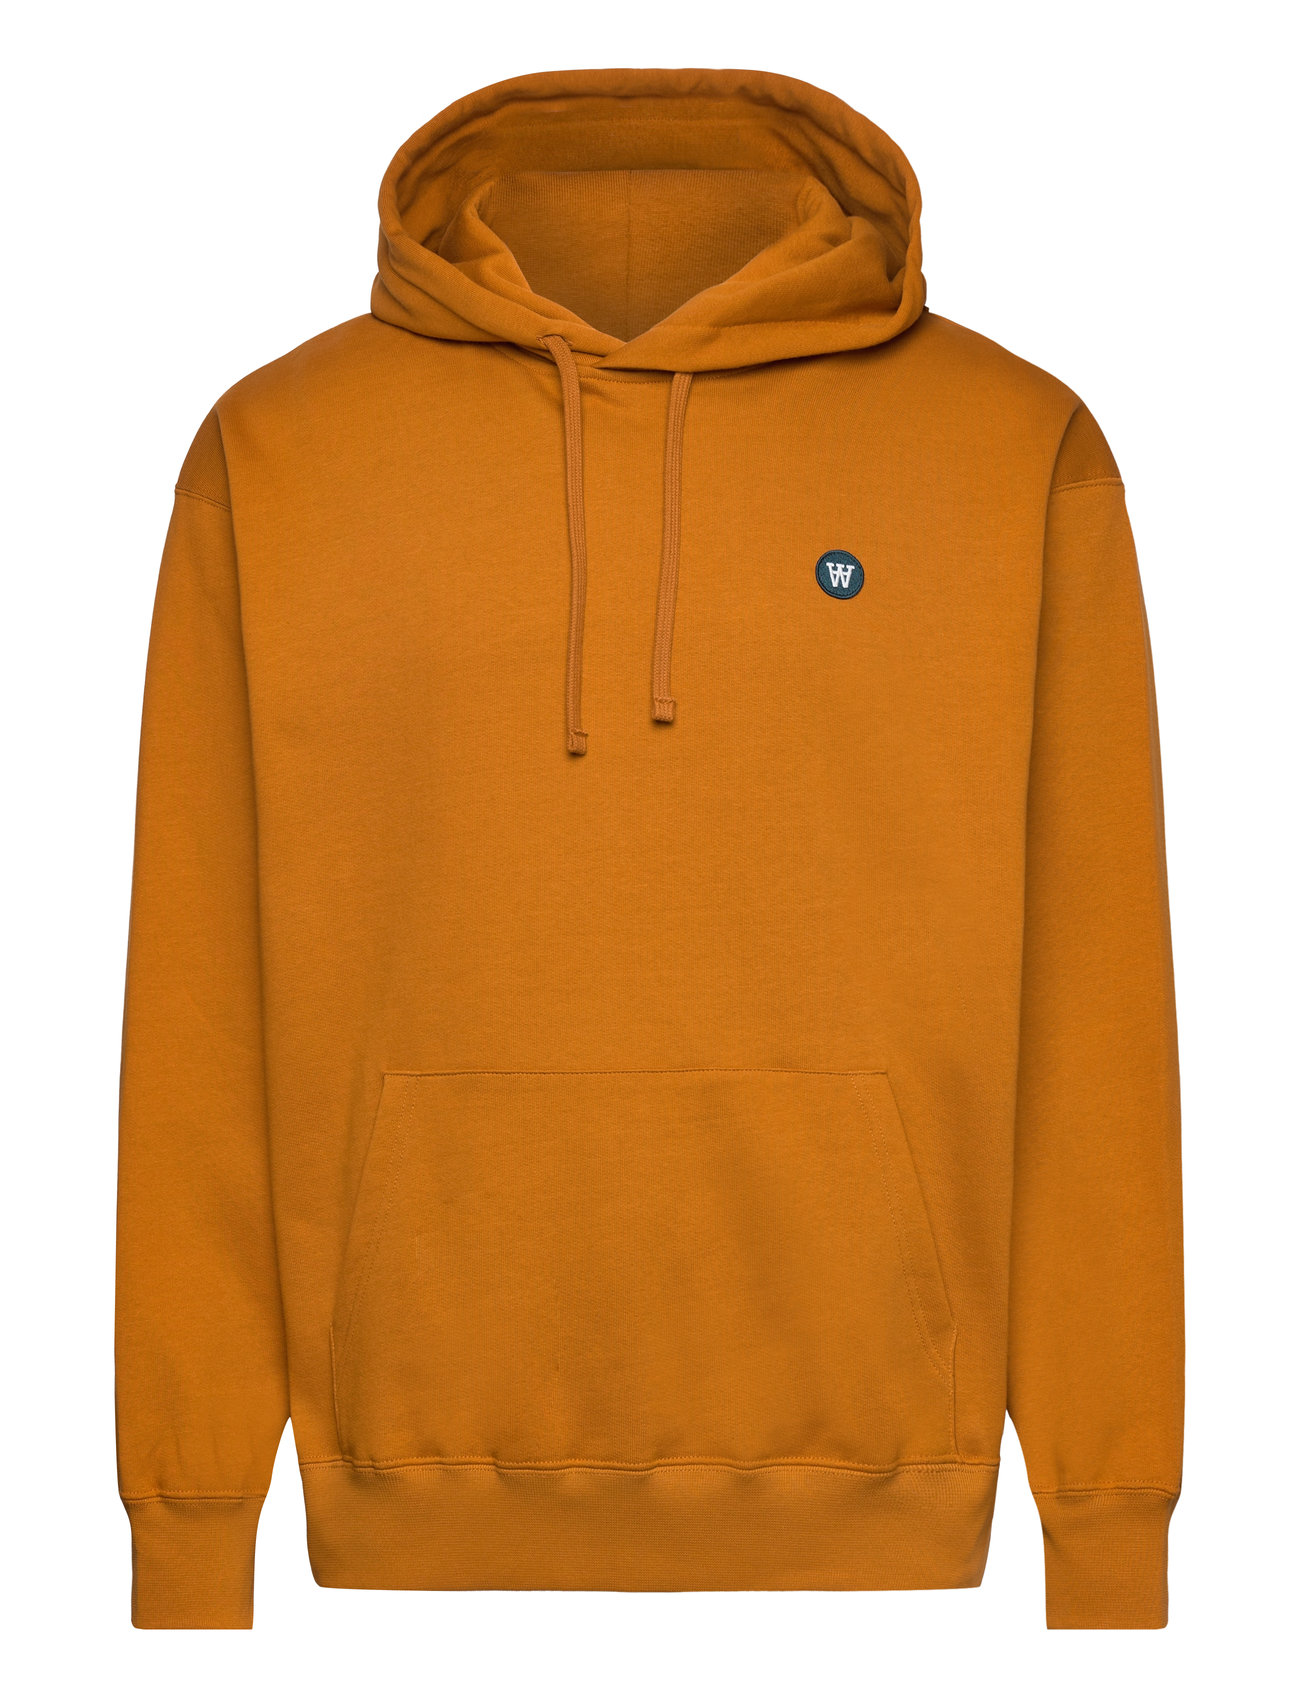 Cass Patch Hoodie Tops Sweatshirts & Hoodies Hoodies Orange Double A By Wood Wood